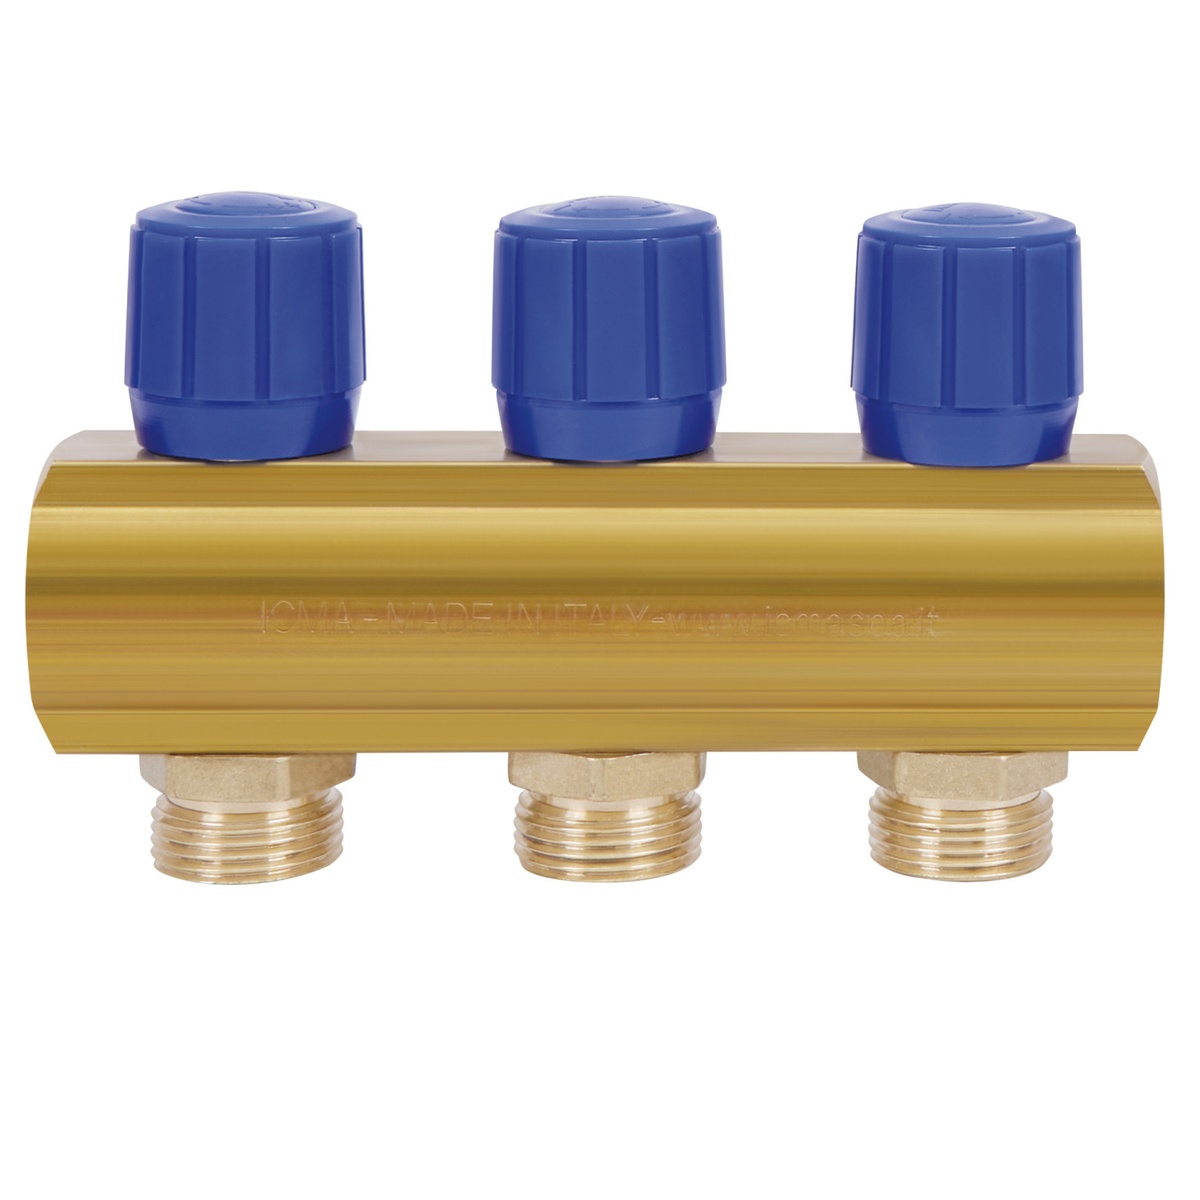 Коллектор для водопровода ICMA 3 контура 1"/3/4" 1105 (Blue) 871105PH0512